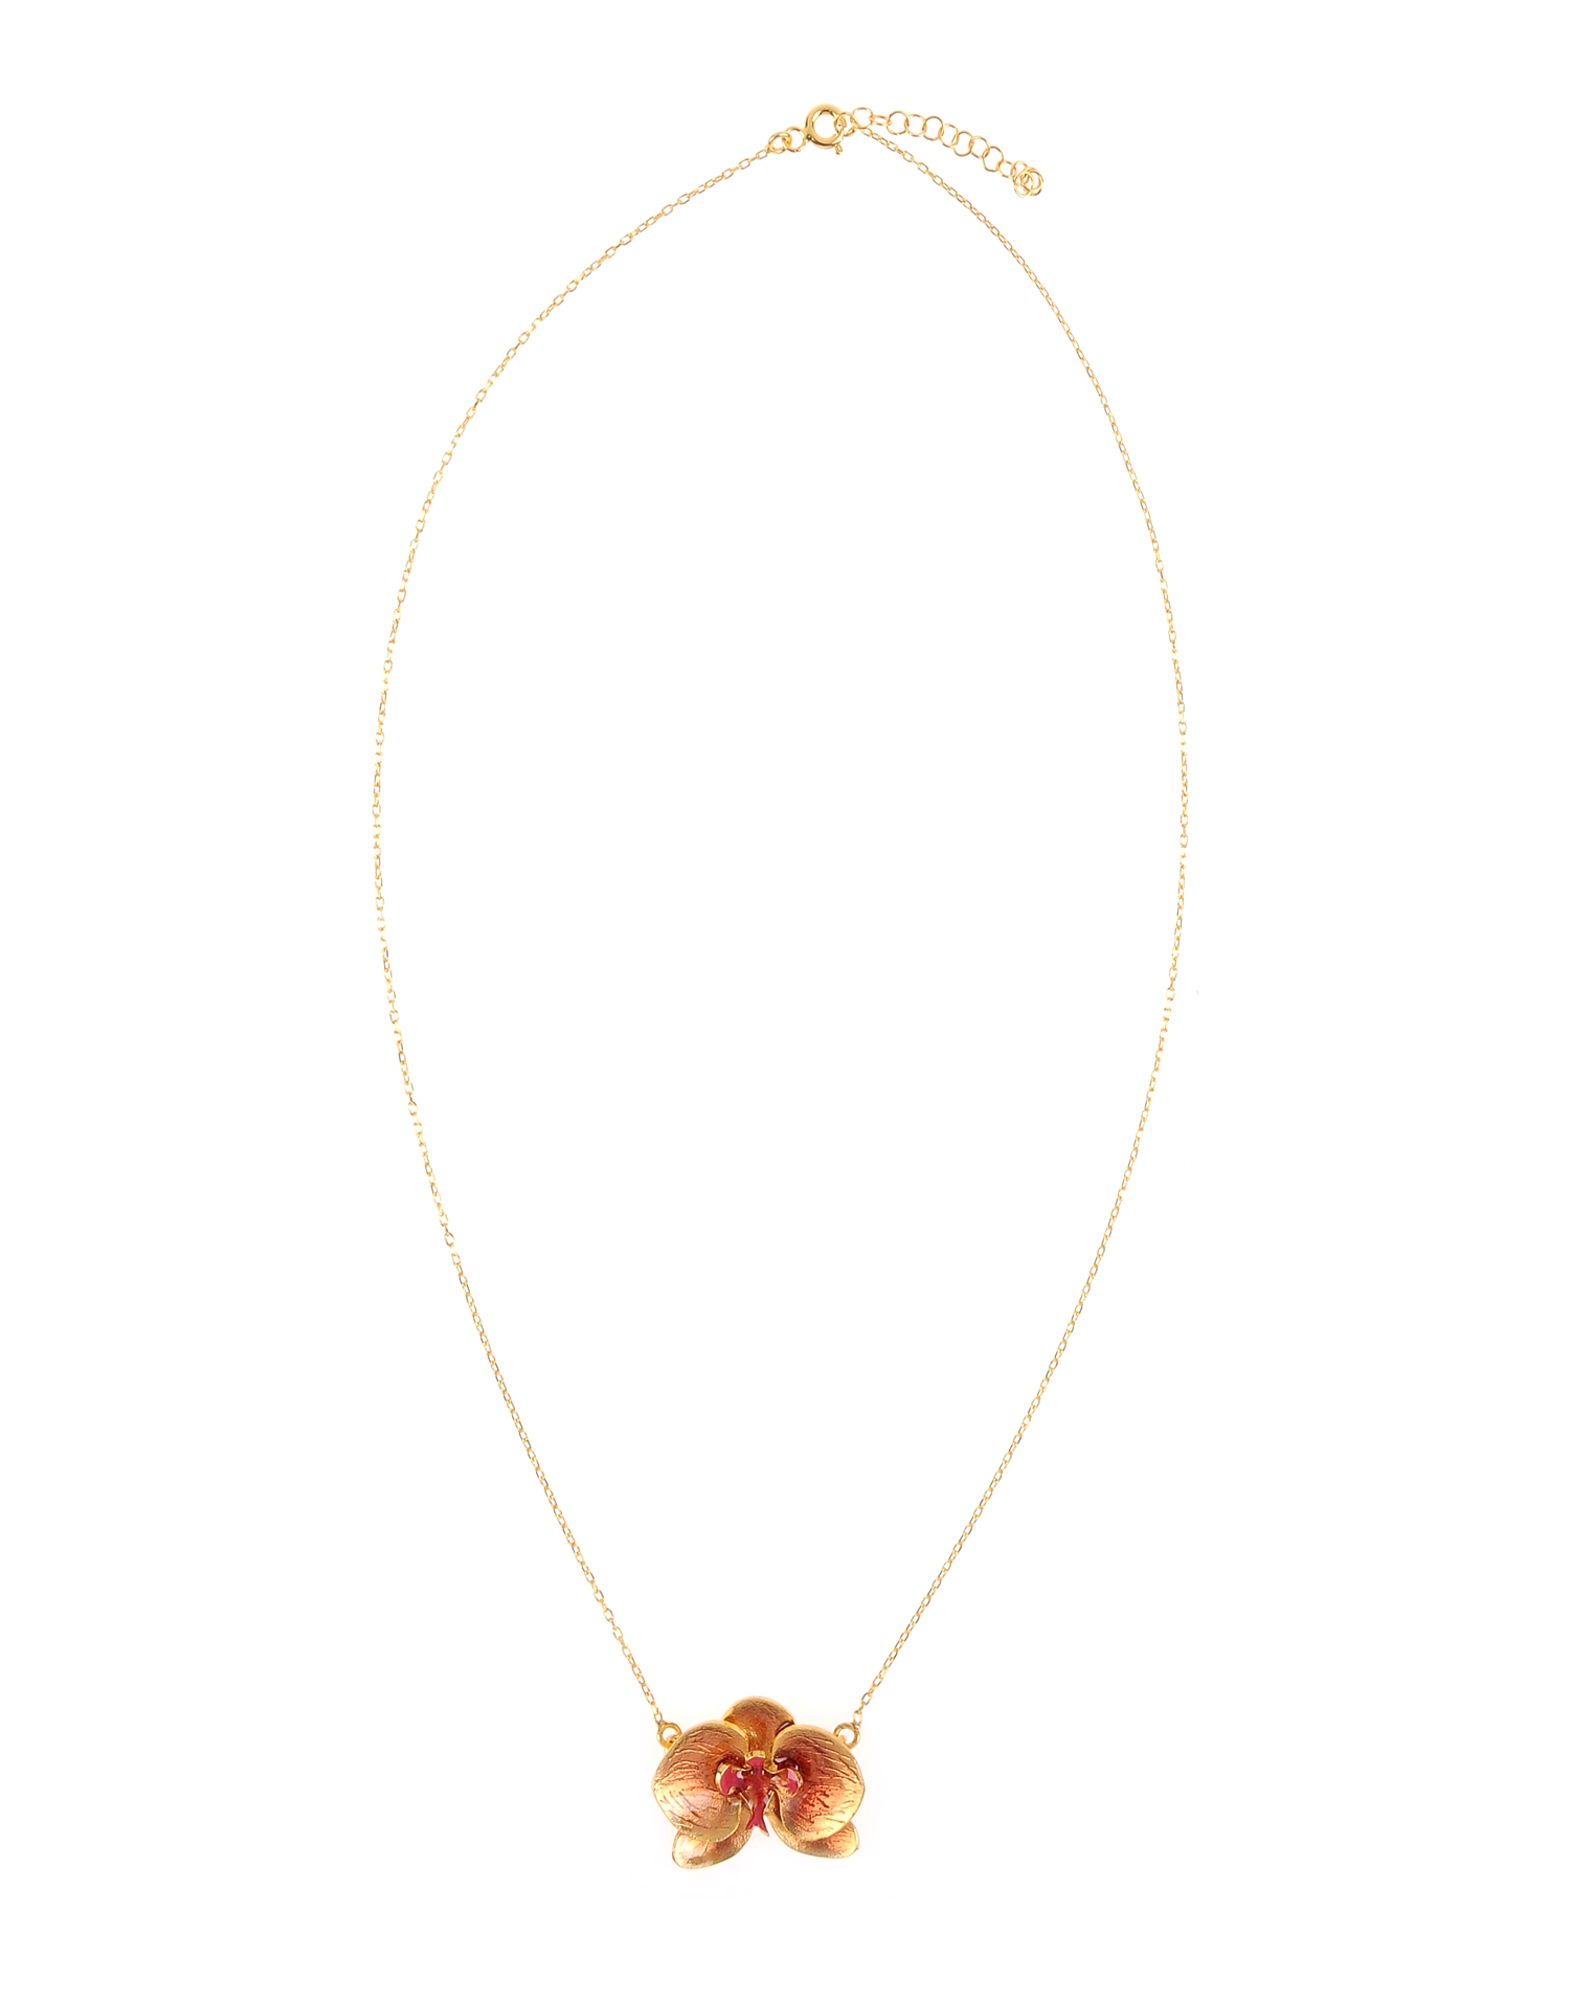 《送料無料》FIRST PEOPLE FIRST レディース ネックレス ゴールド シルバー925/1000 / エナメル Pink Orchid Flower Silver Necklace